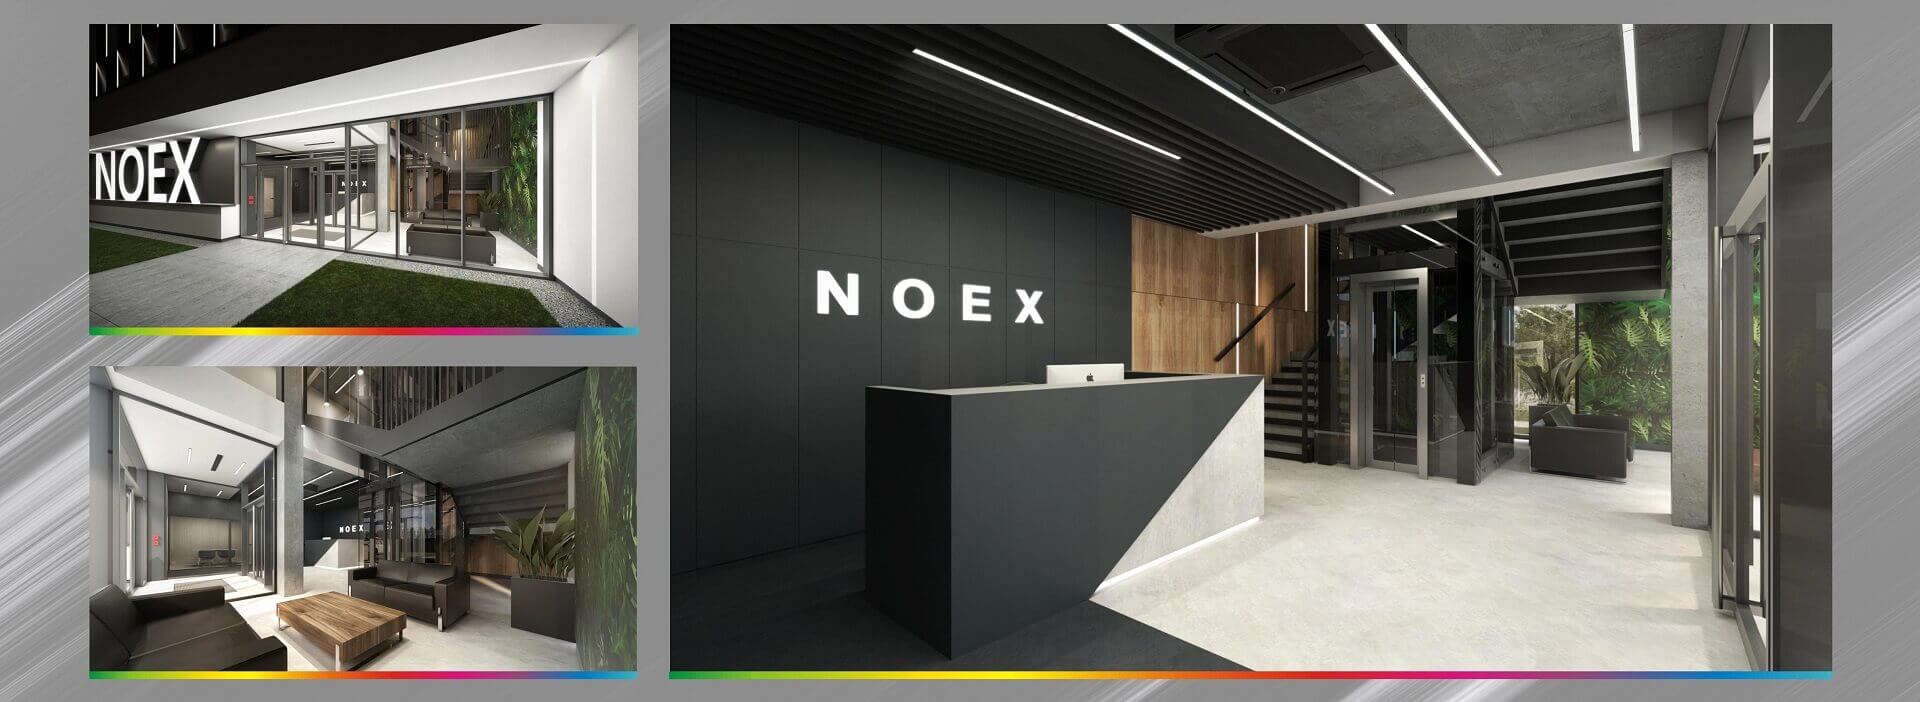 nowoczesna siedziba noex wraz z recepcja